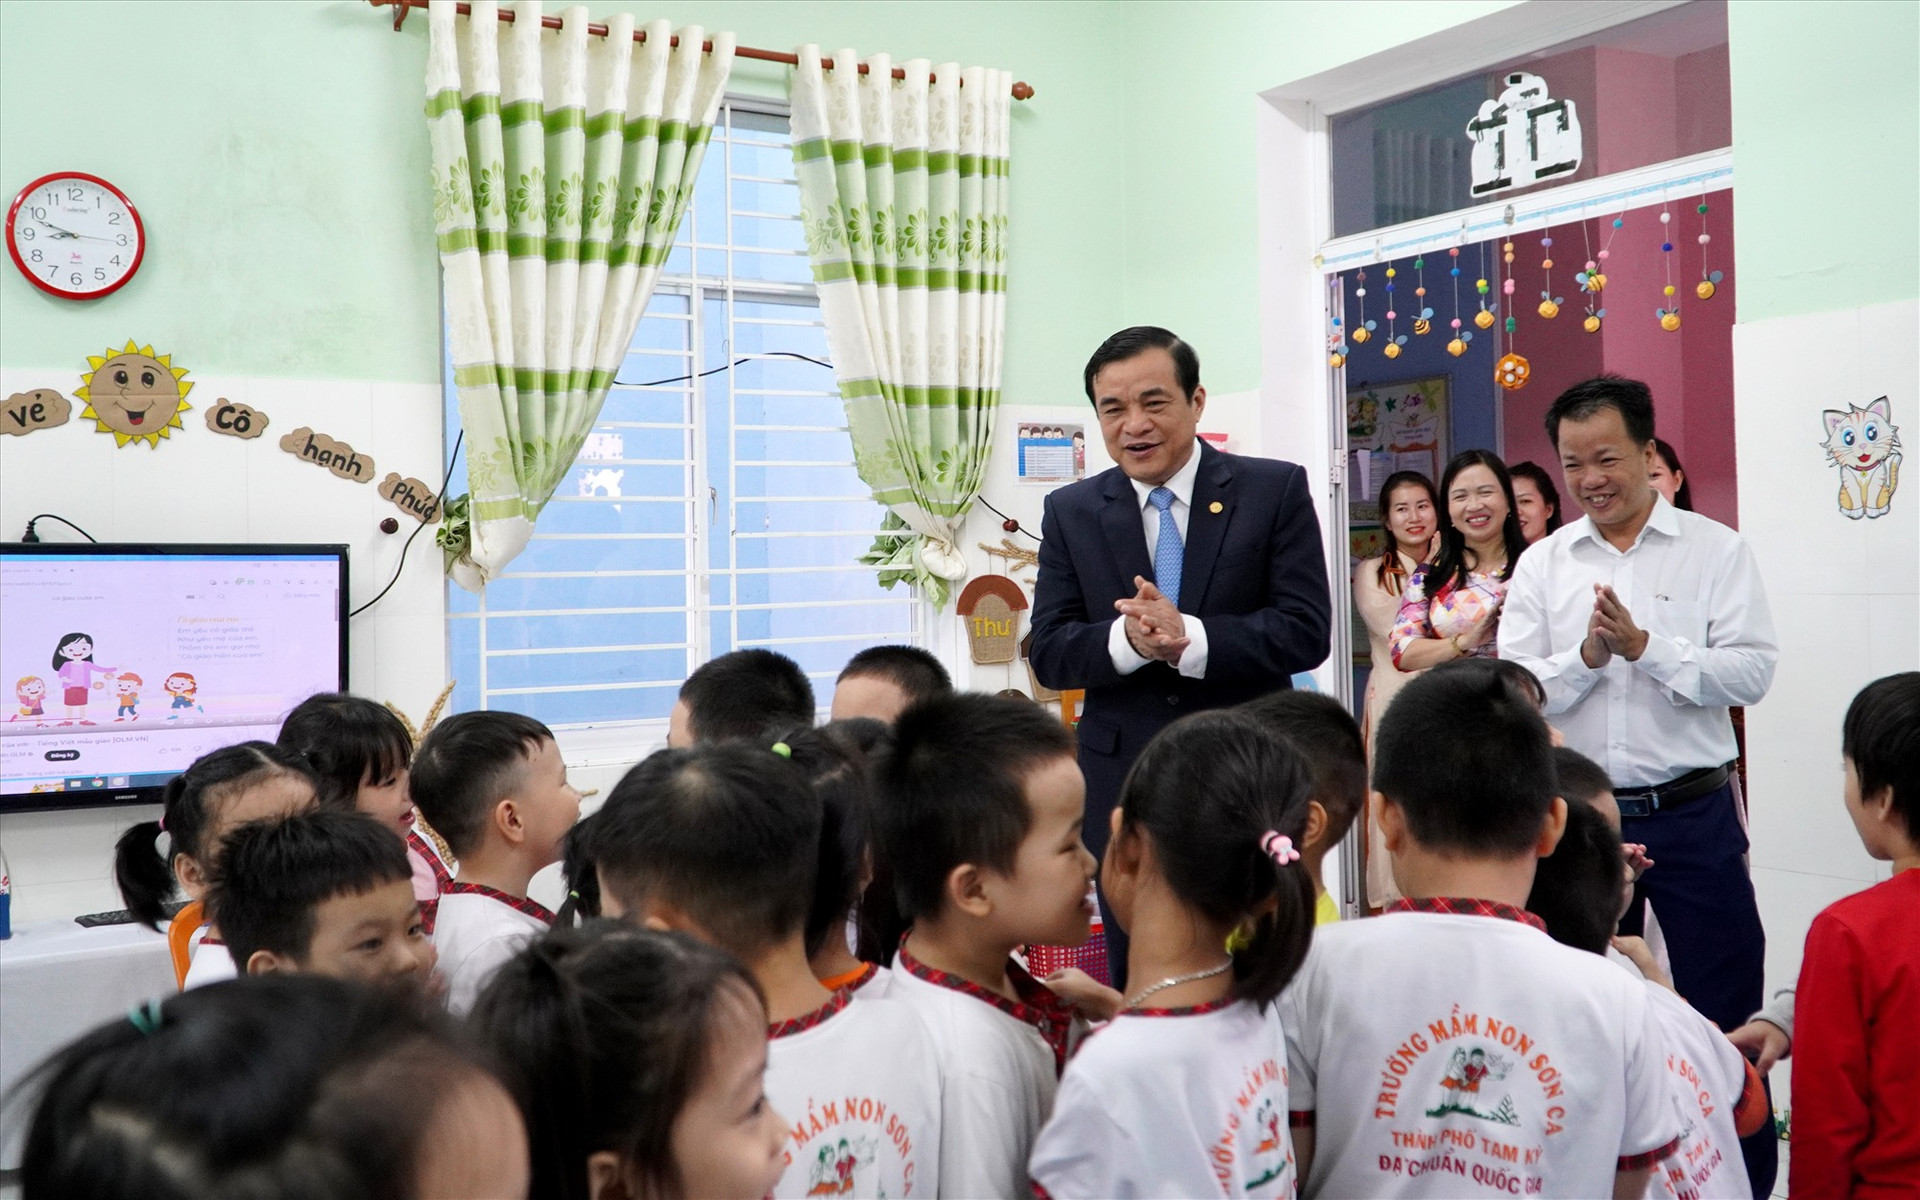 Bí thư Tỉnh ủy Phan Việt Cường thăm hỏi việc học tập của các cháu mầm non. Ảnh: H.Q